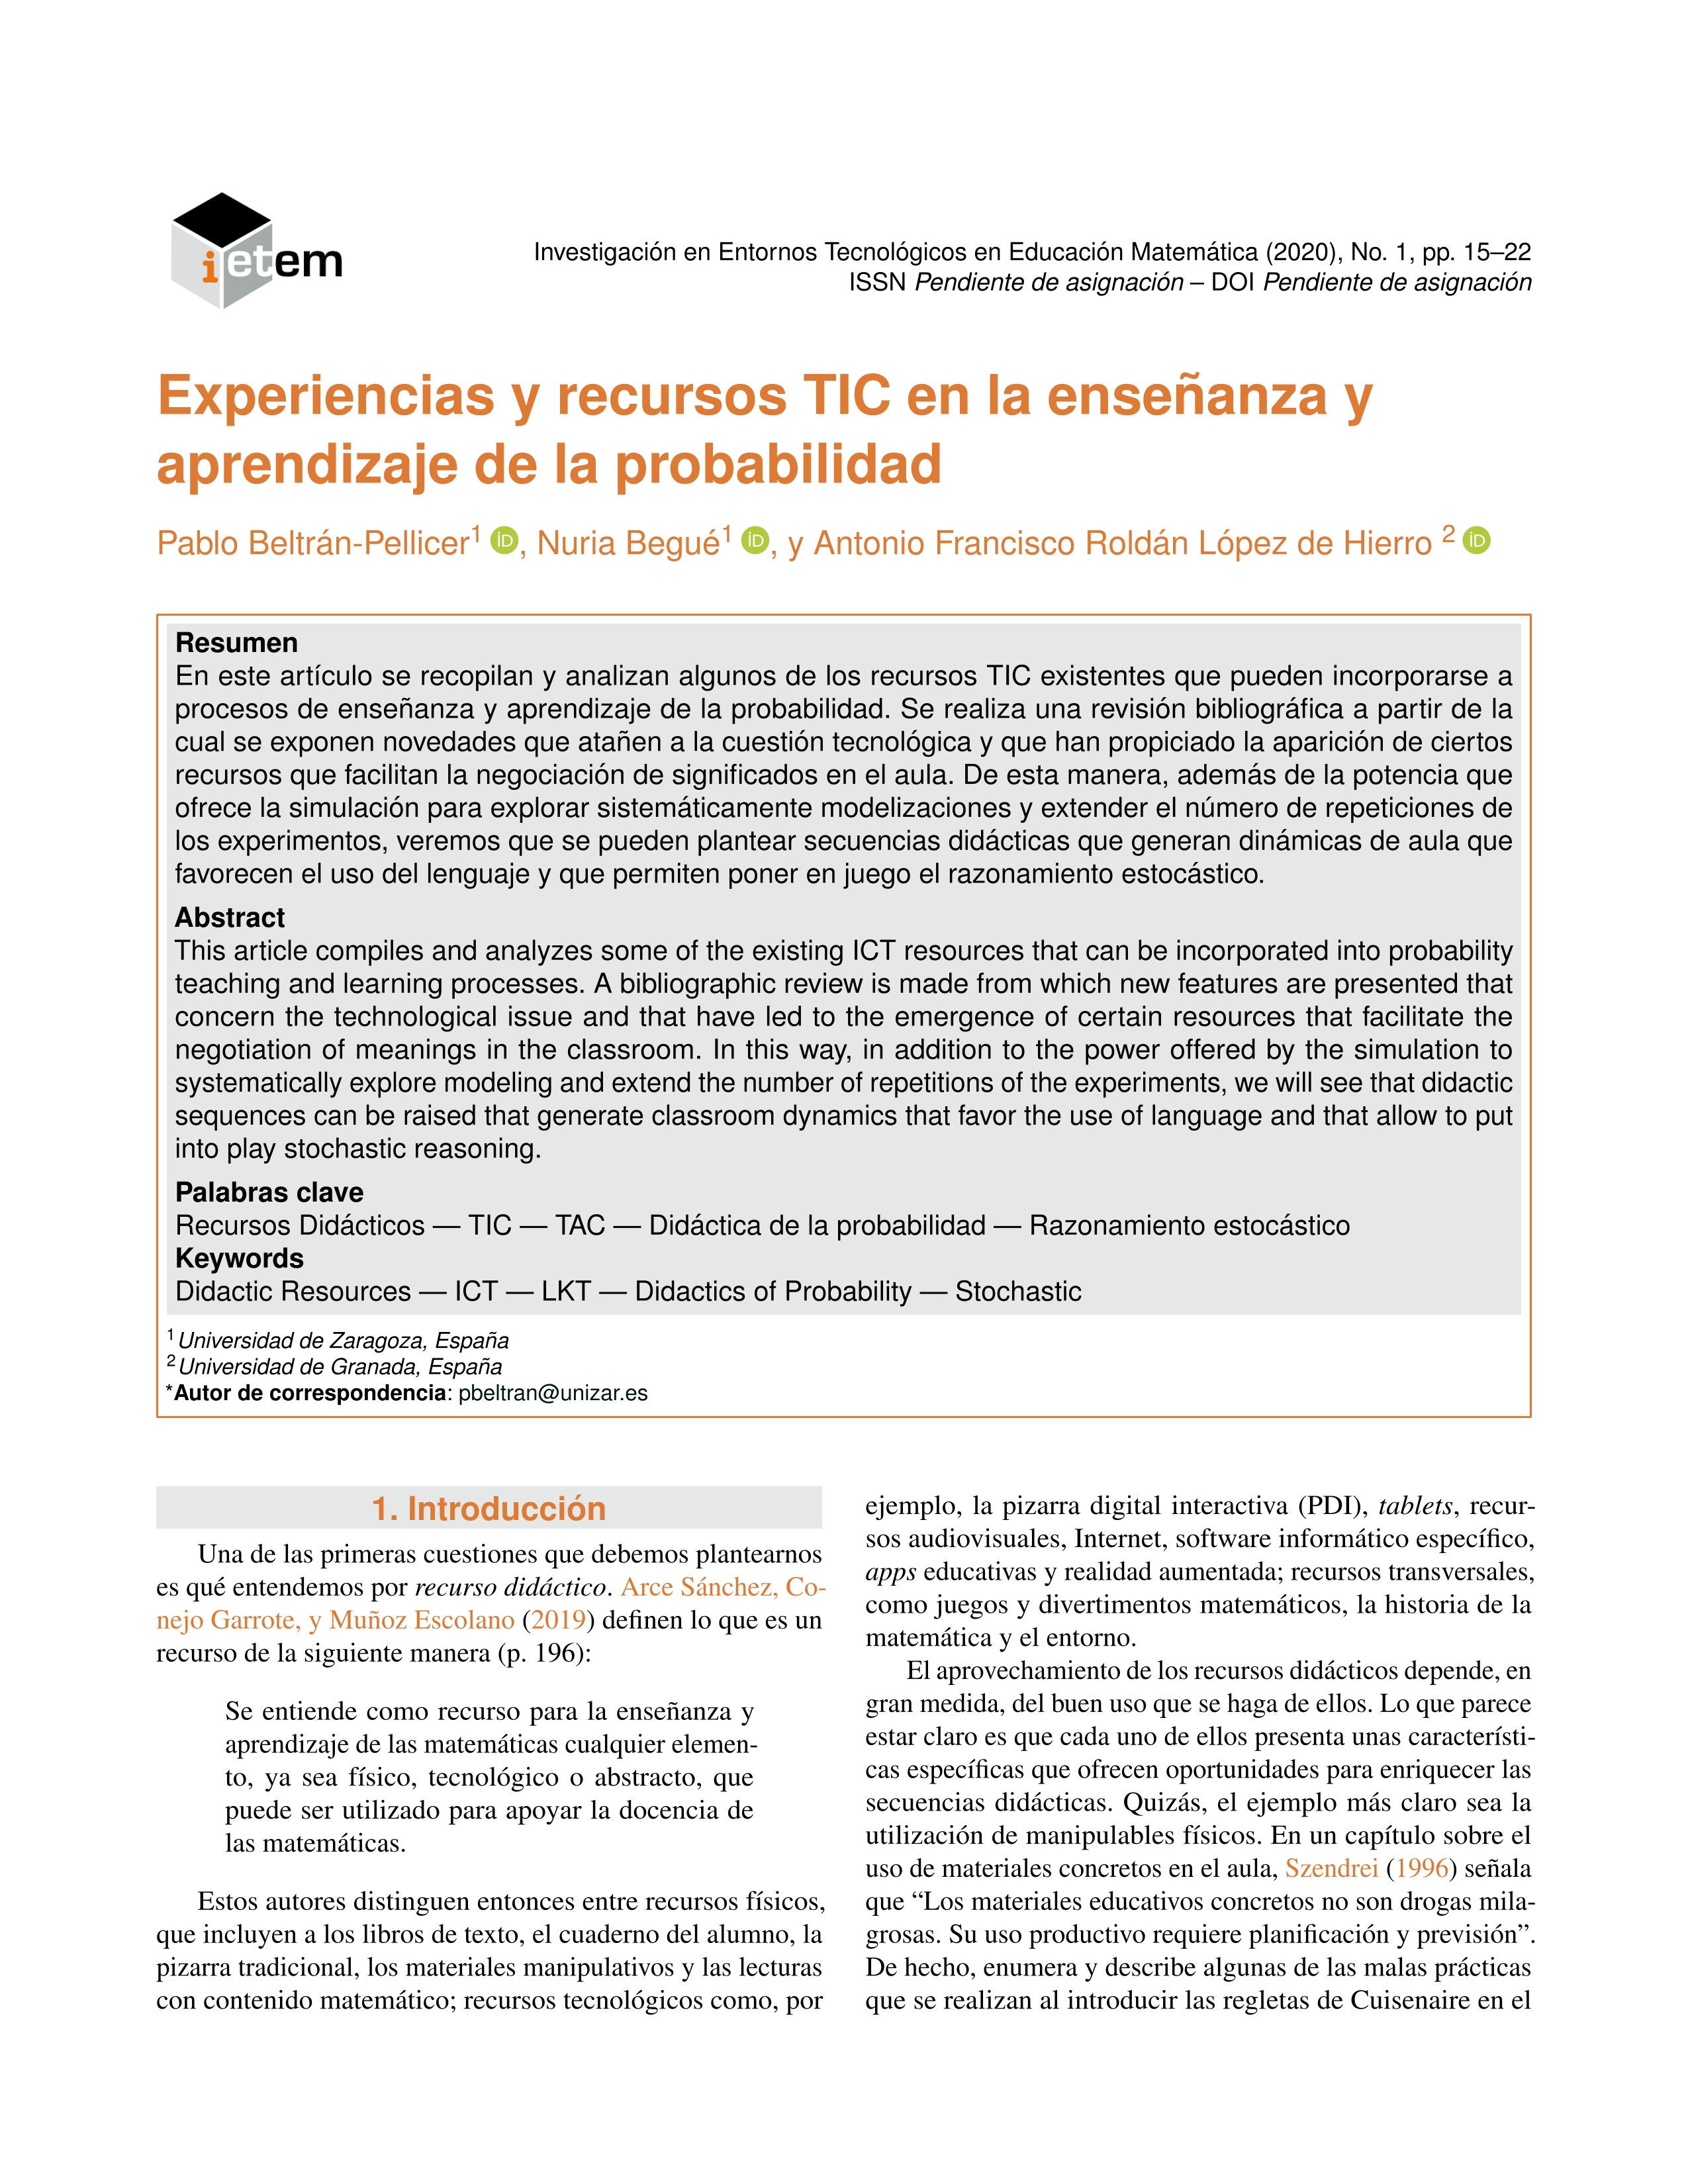 Experiencias y recursos TIC en la enseñanza y aprendizaje de la probabilidad